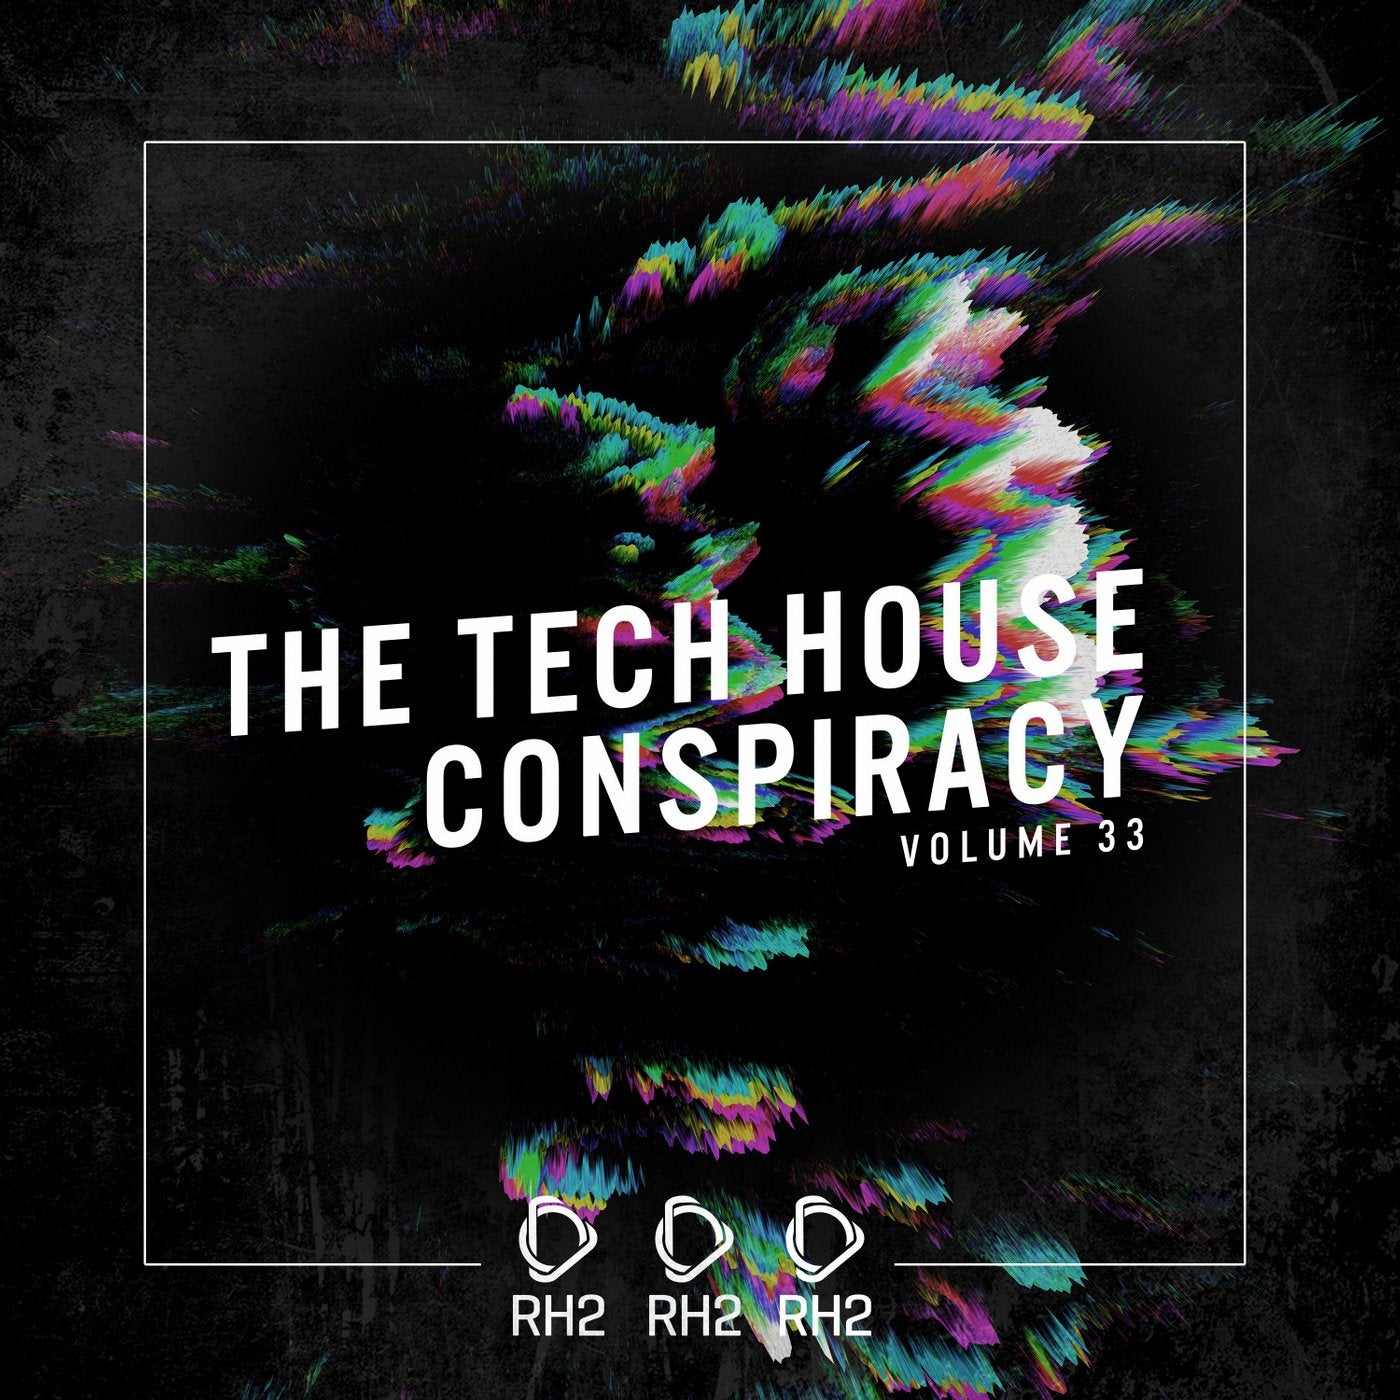 The Tech House Conspiracy Vol. 33